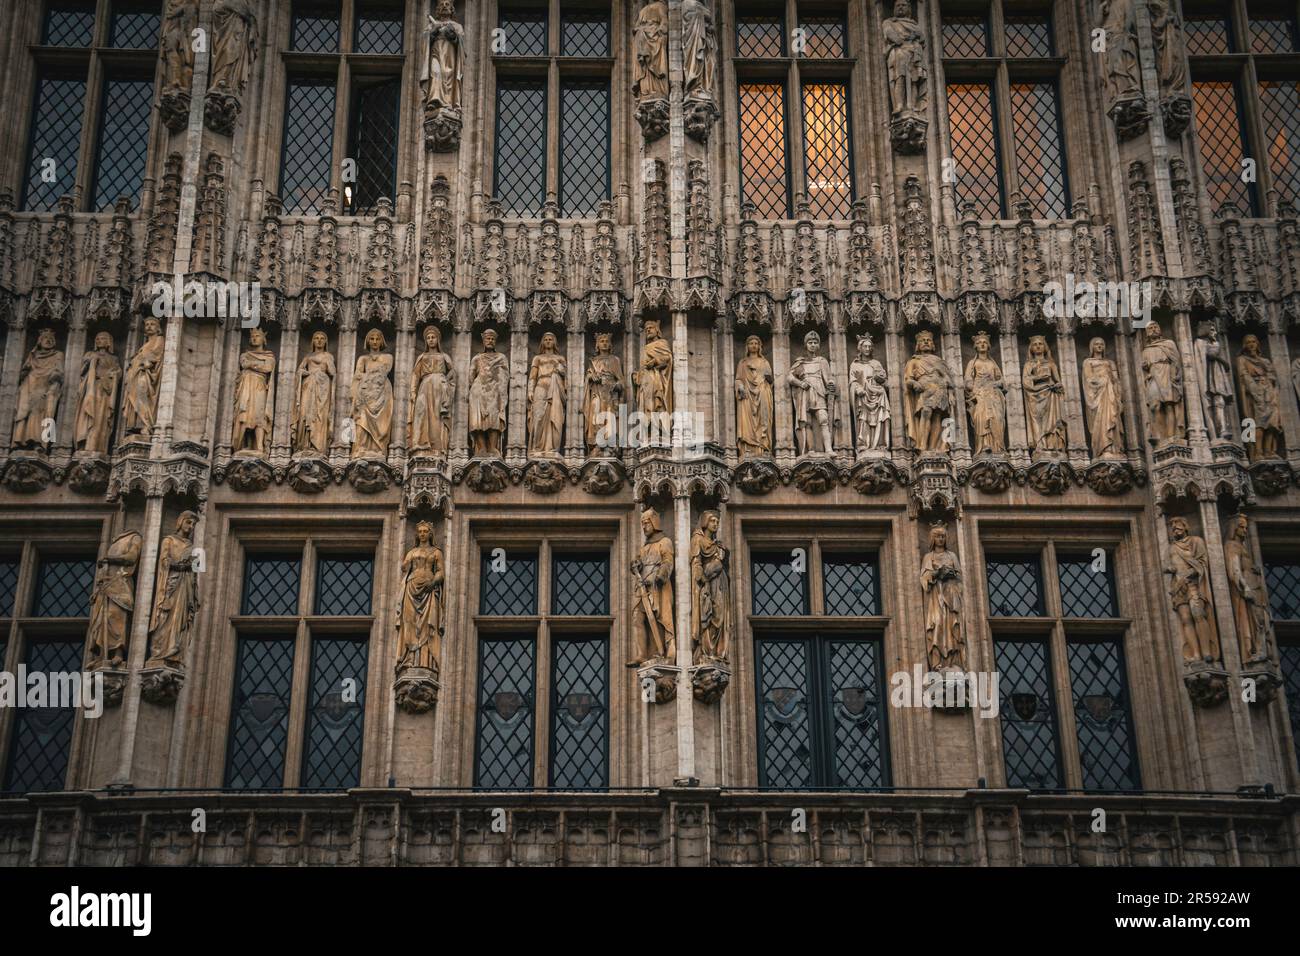 Dettagli della facciata del municipio di Bruxelles - Belgio Foto Stock